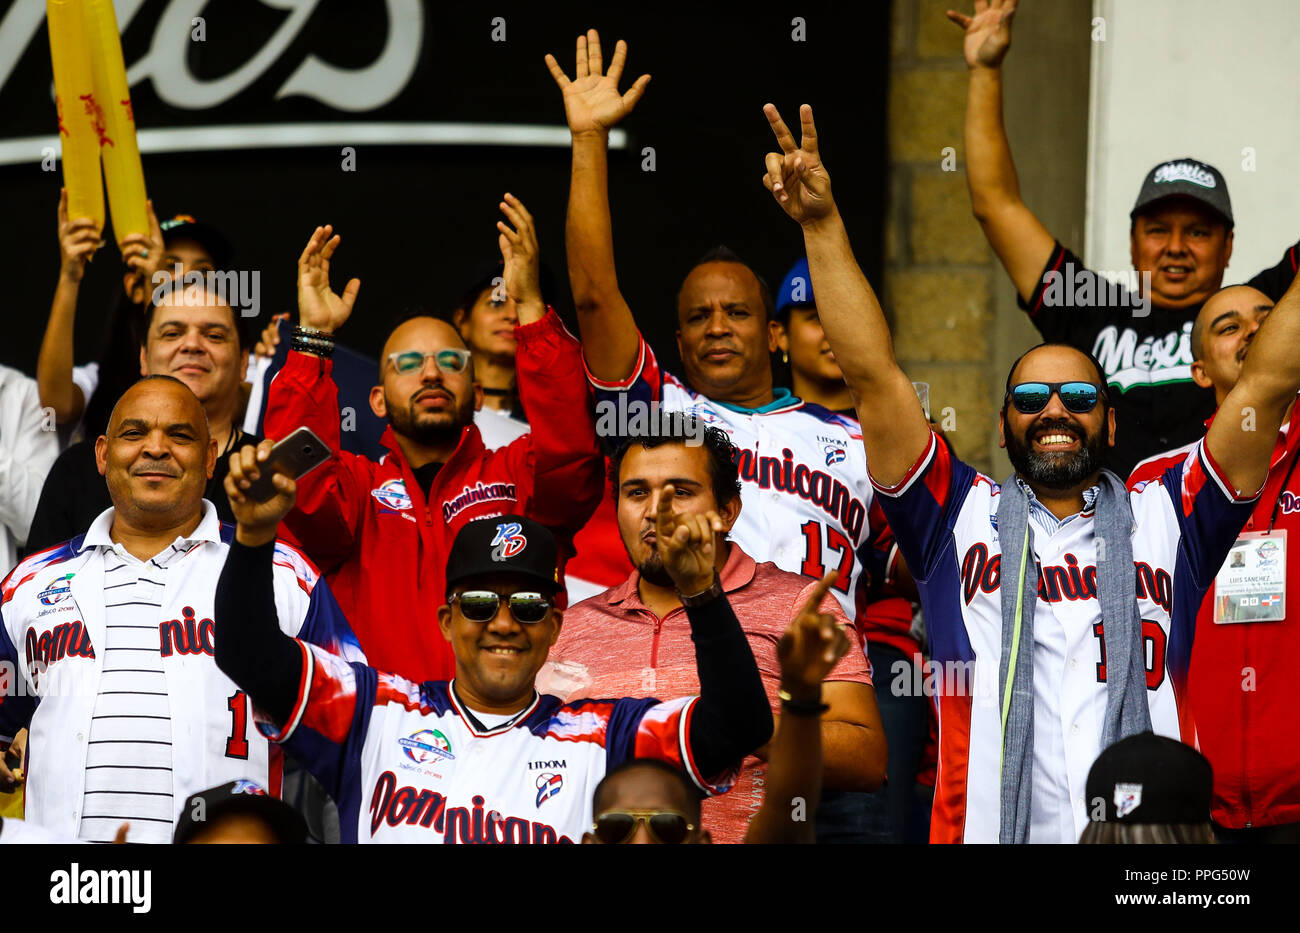 Aficionados y aficionadas de Águilas Cibaeñas de Republica Dominicana Aspectos del segundo día de actividades de la Serie del Caribe con el partido Stock Photo